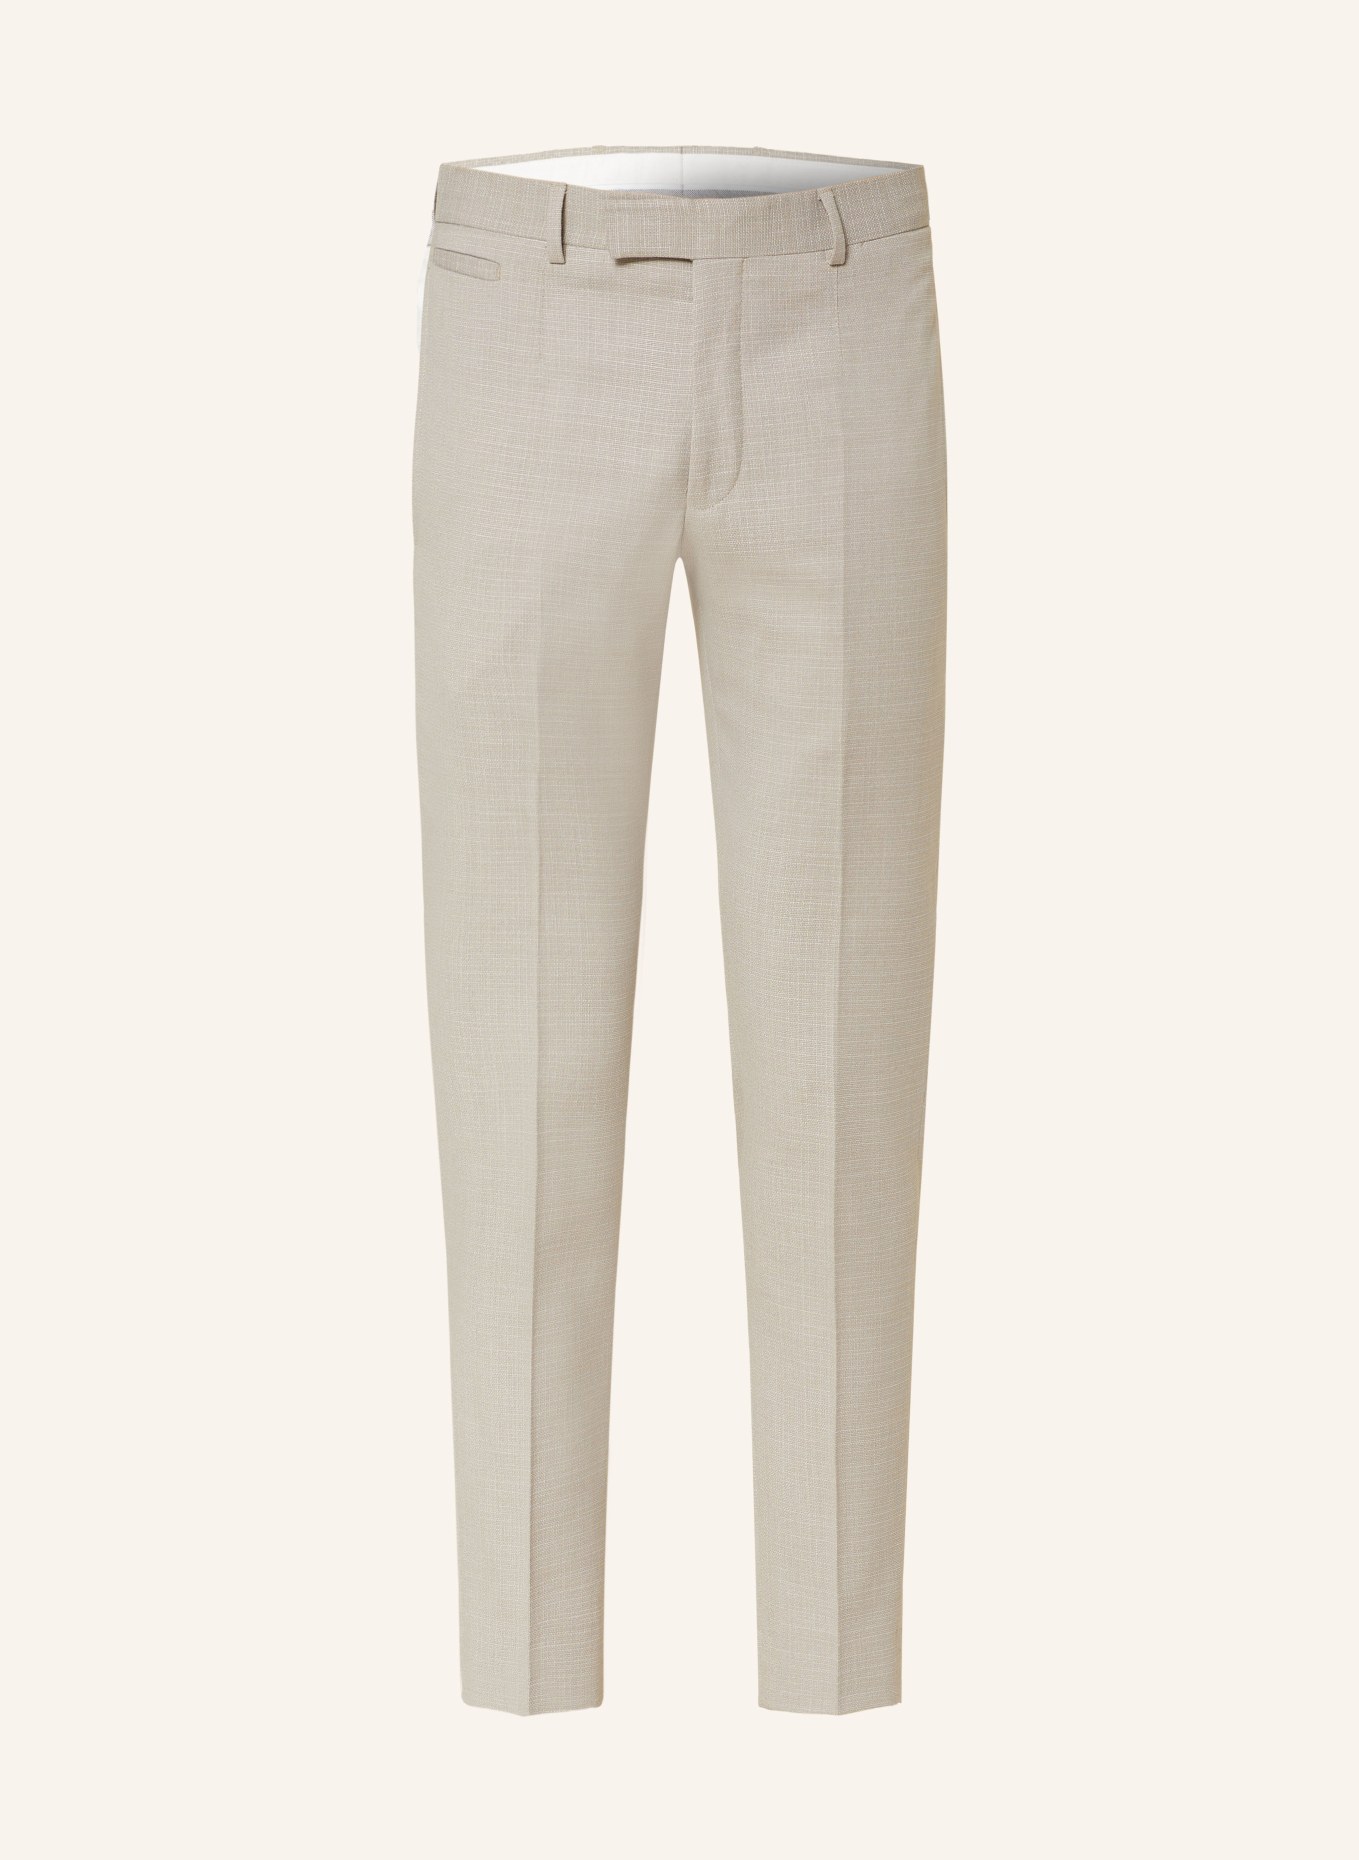 STRELLSON Anzughose KYND Extra Slim Fit, Farbe: 265 Medium Beige               265 (Bild 1)